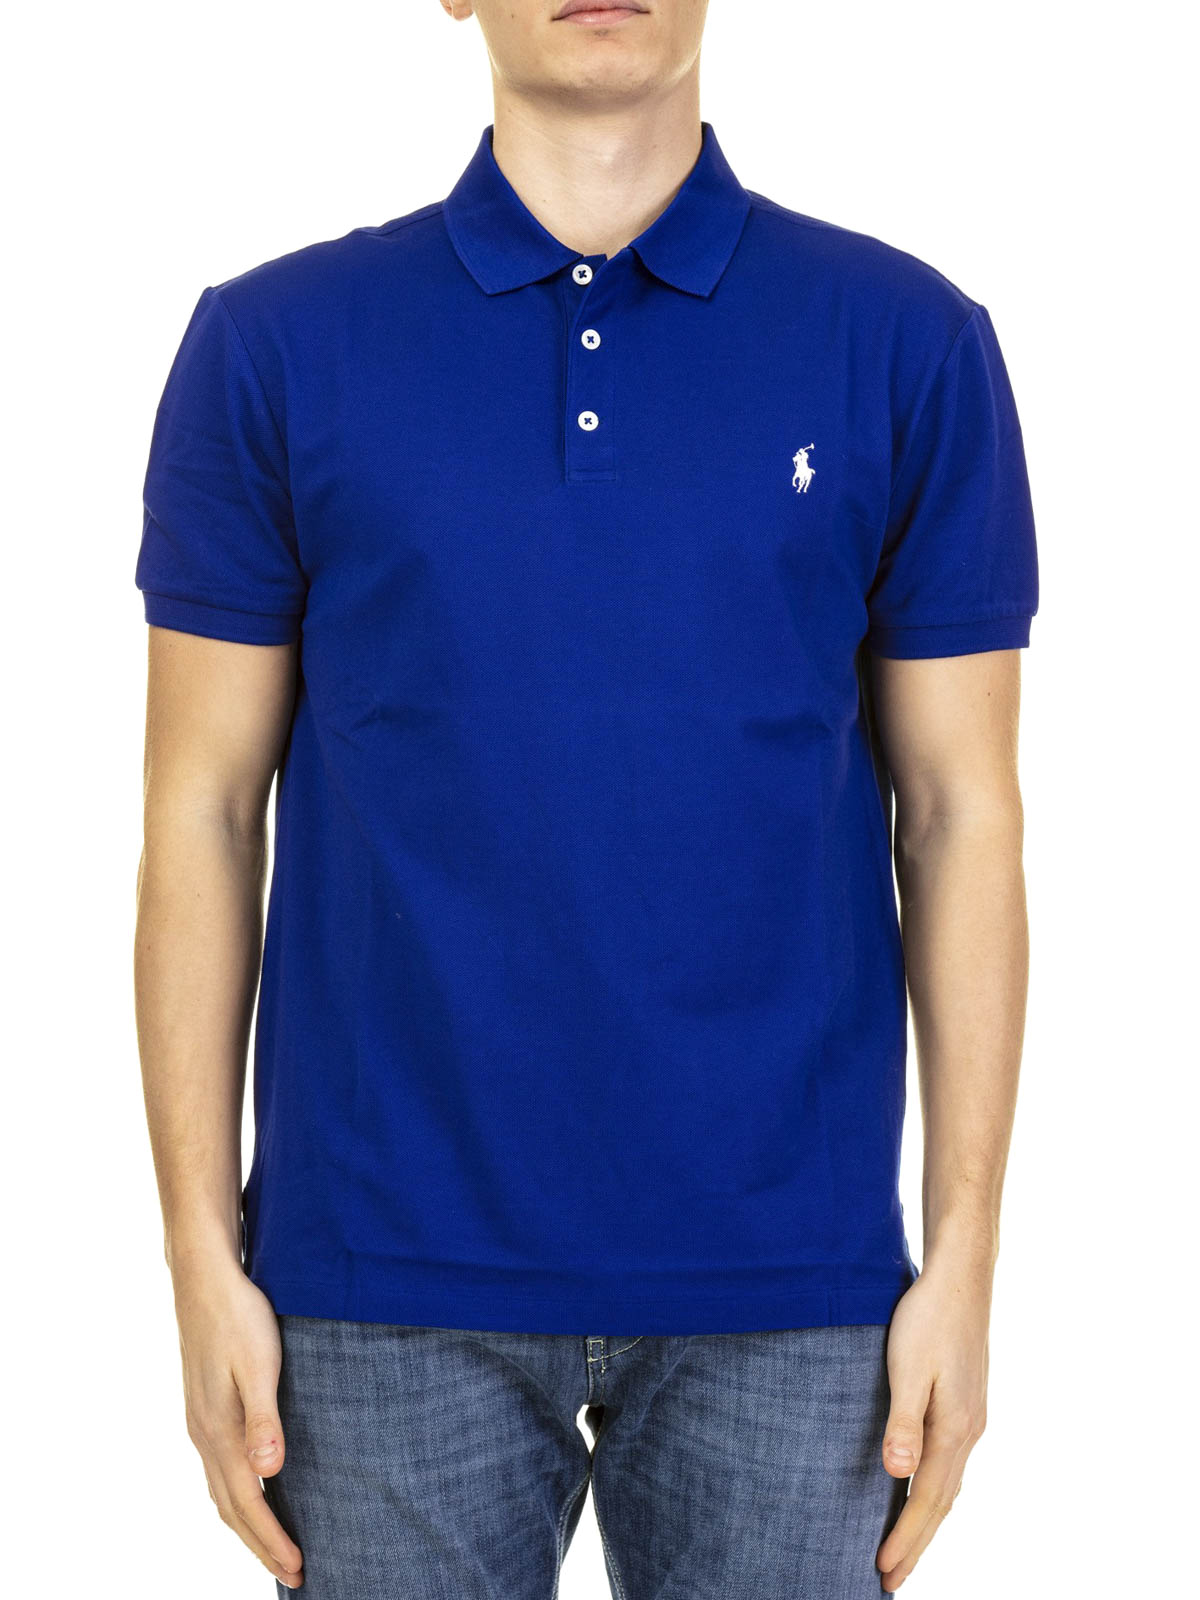 royal pique Polo shirt Logo Lauren Ralph cotton 710541705112 - polo blue - shirts Polo